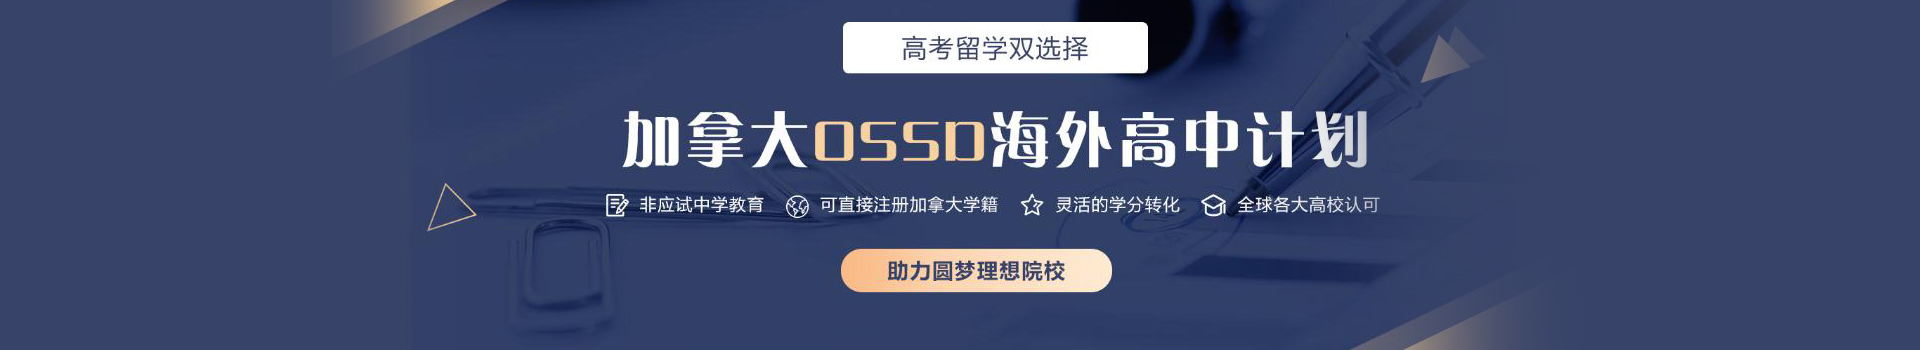 唐山新航道OSSD课程